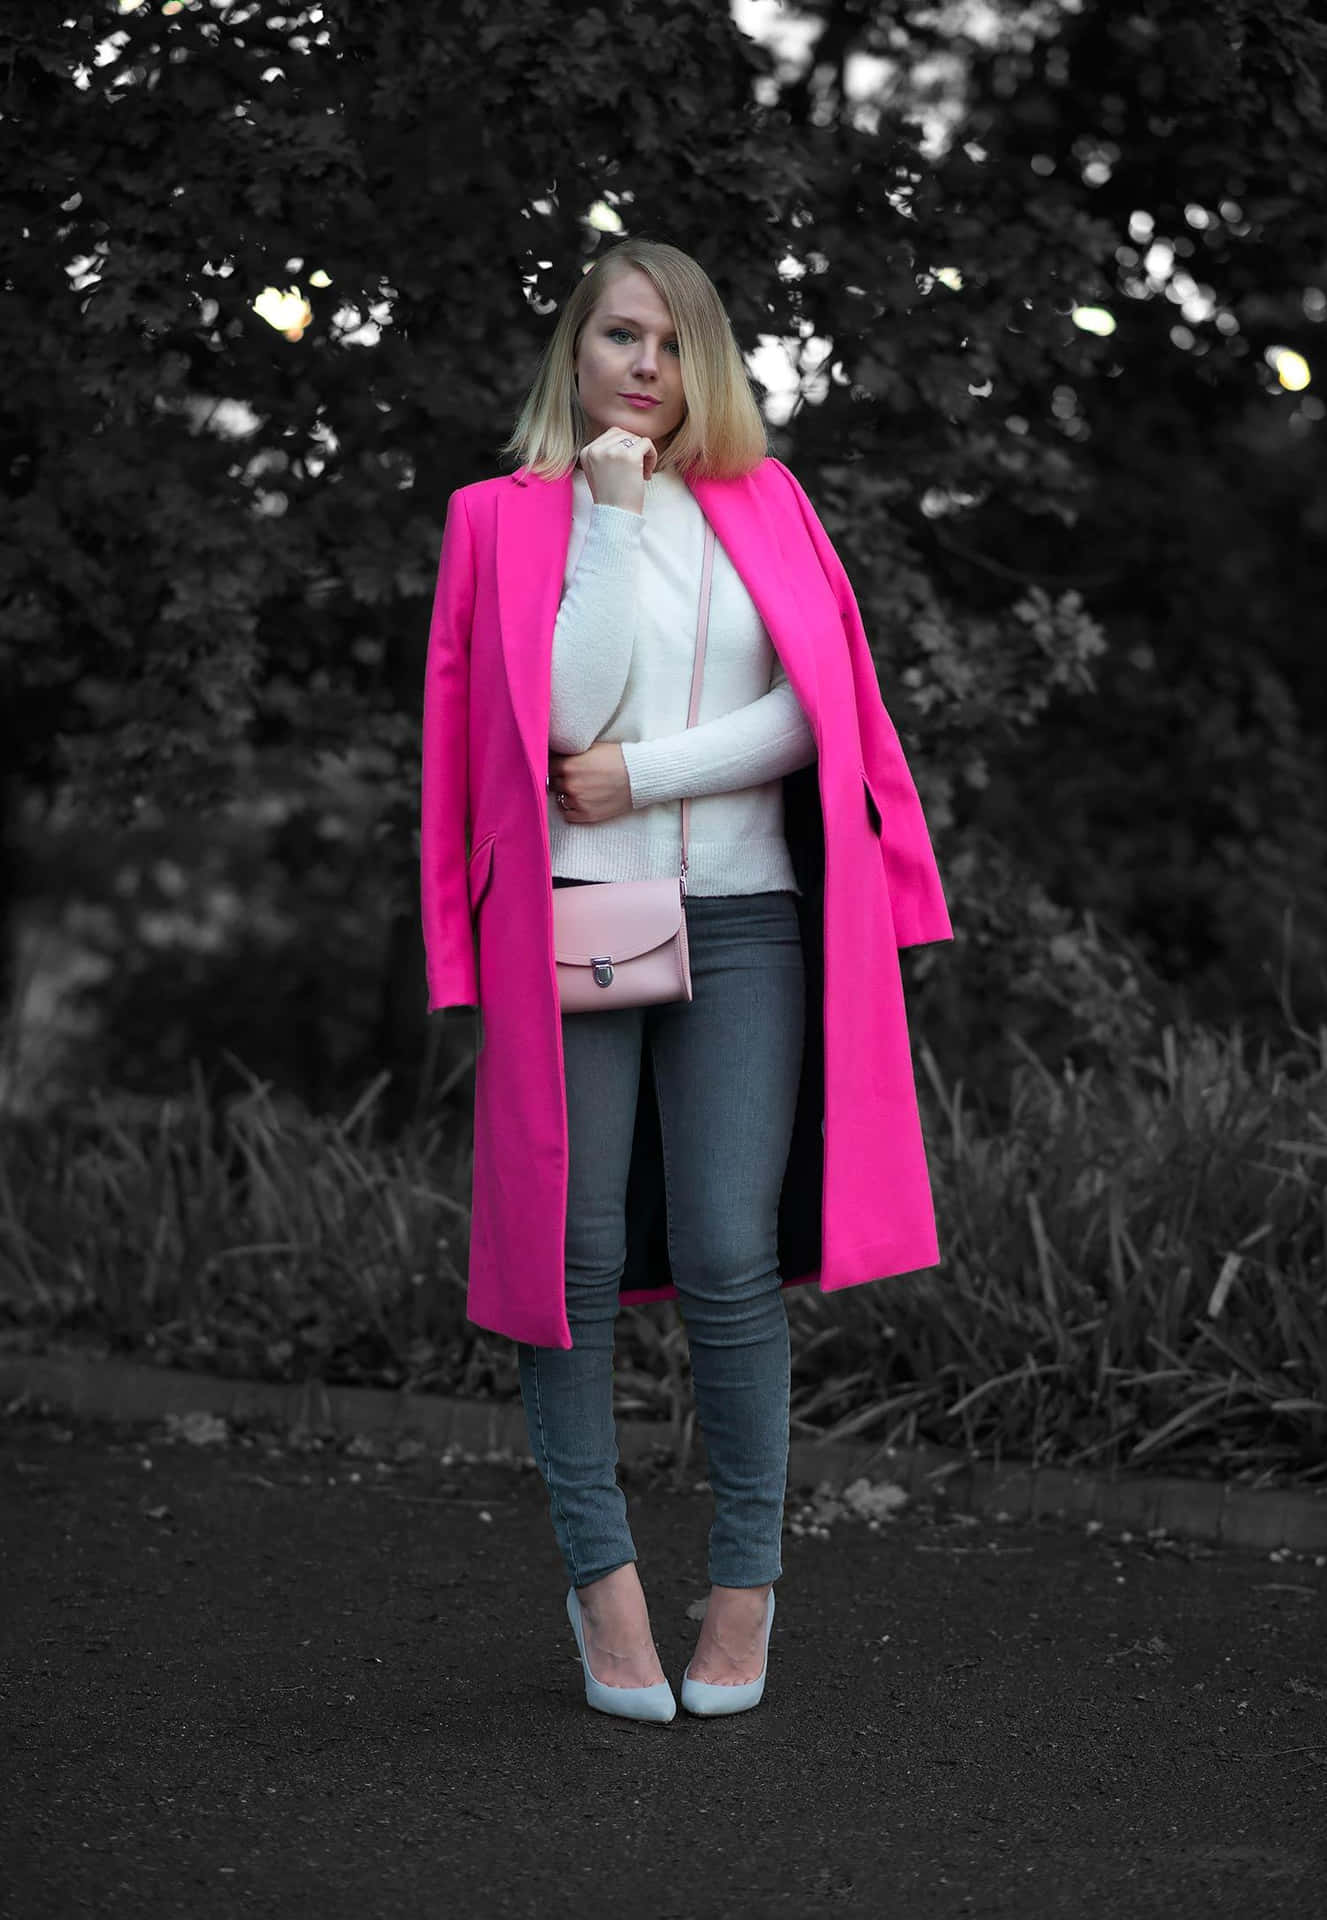 Stylish woman wearing a pink coat Wallpaper